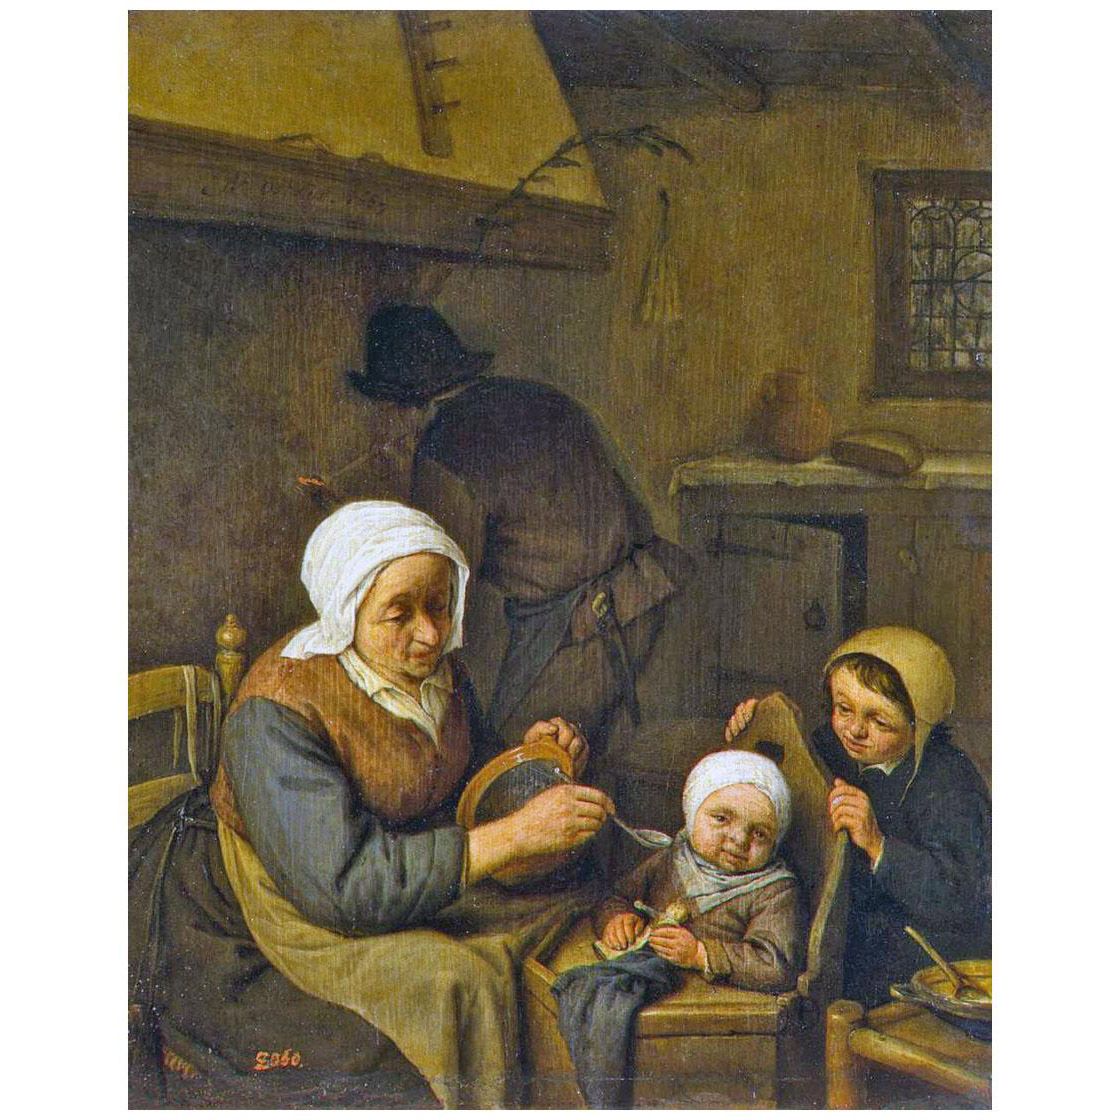 Adriaen van Ostade. Peasant Family. 1667. Hermitage Museum